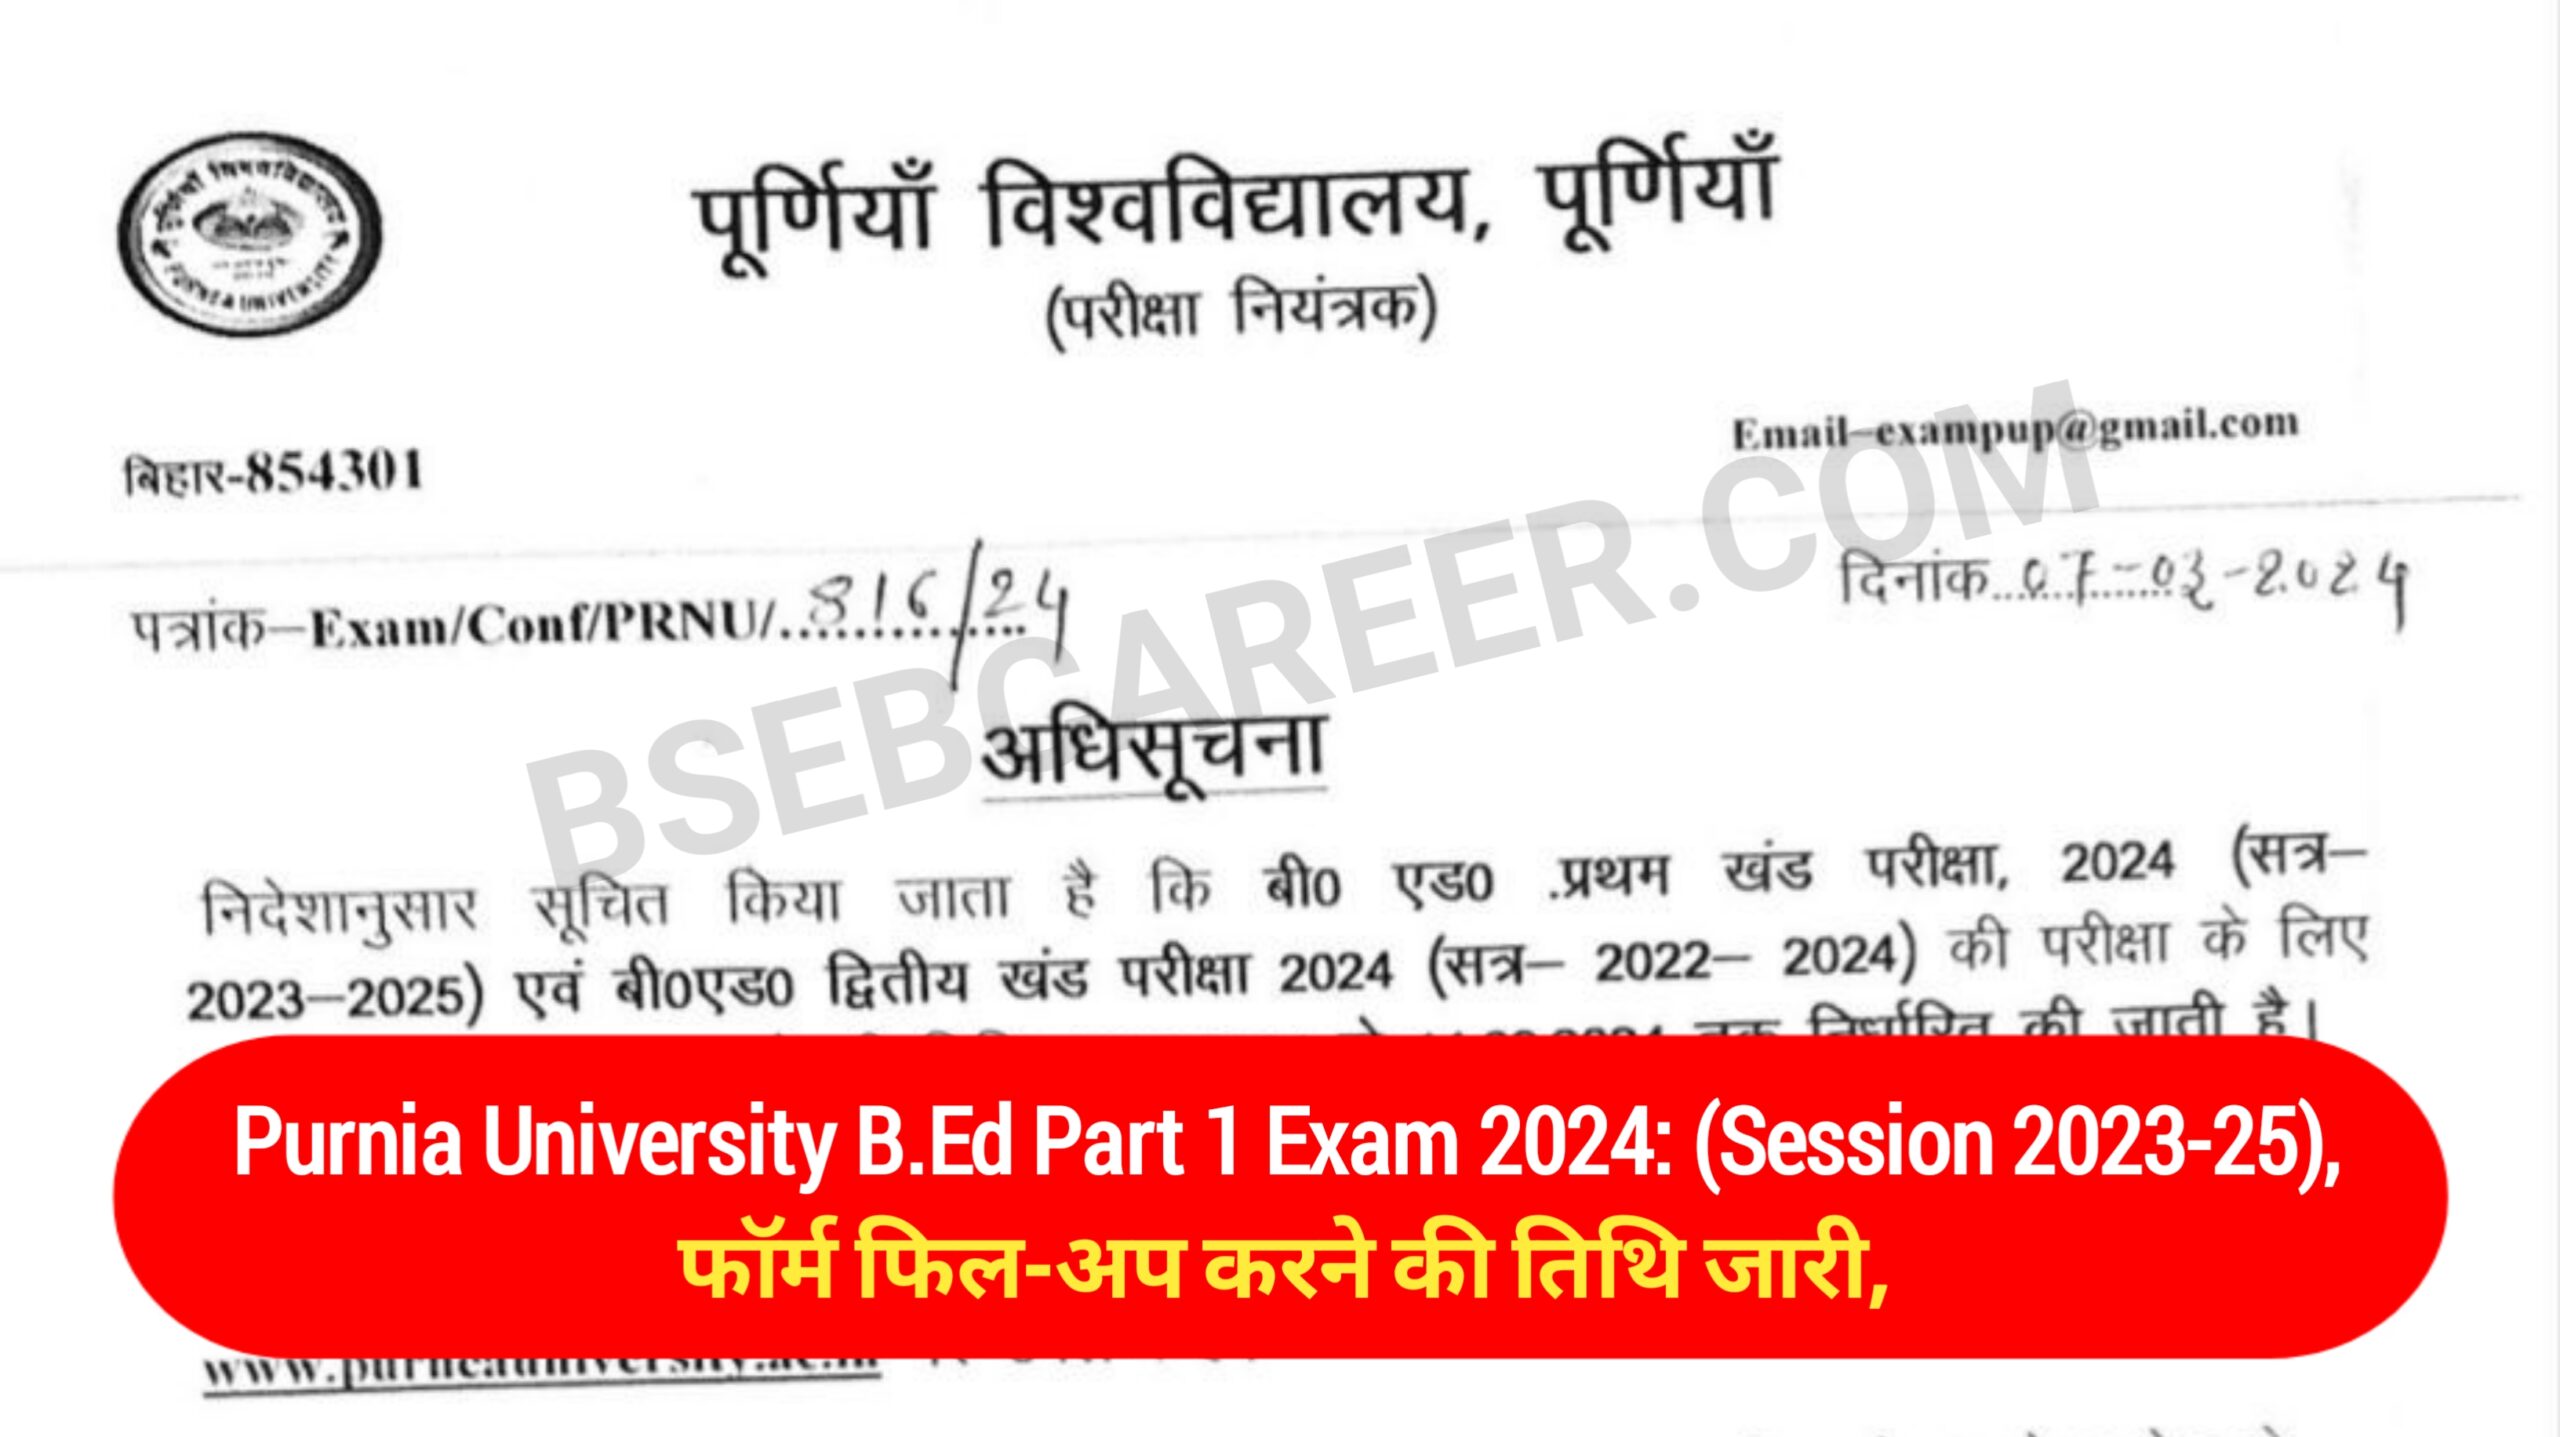 Purnia University B.Ed Part 1 Exam 2024